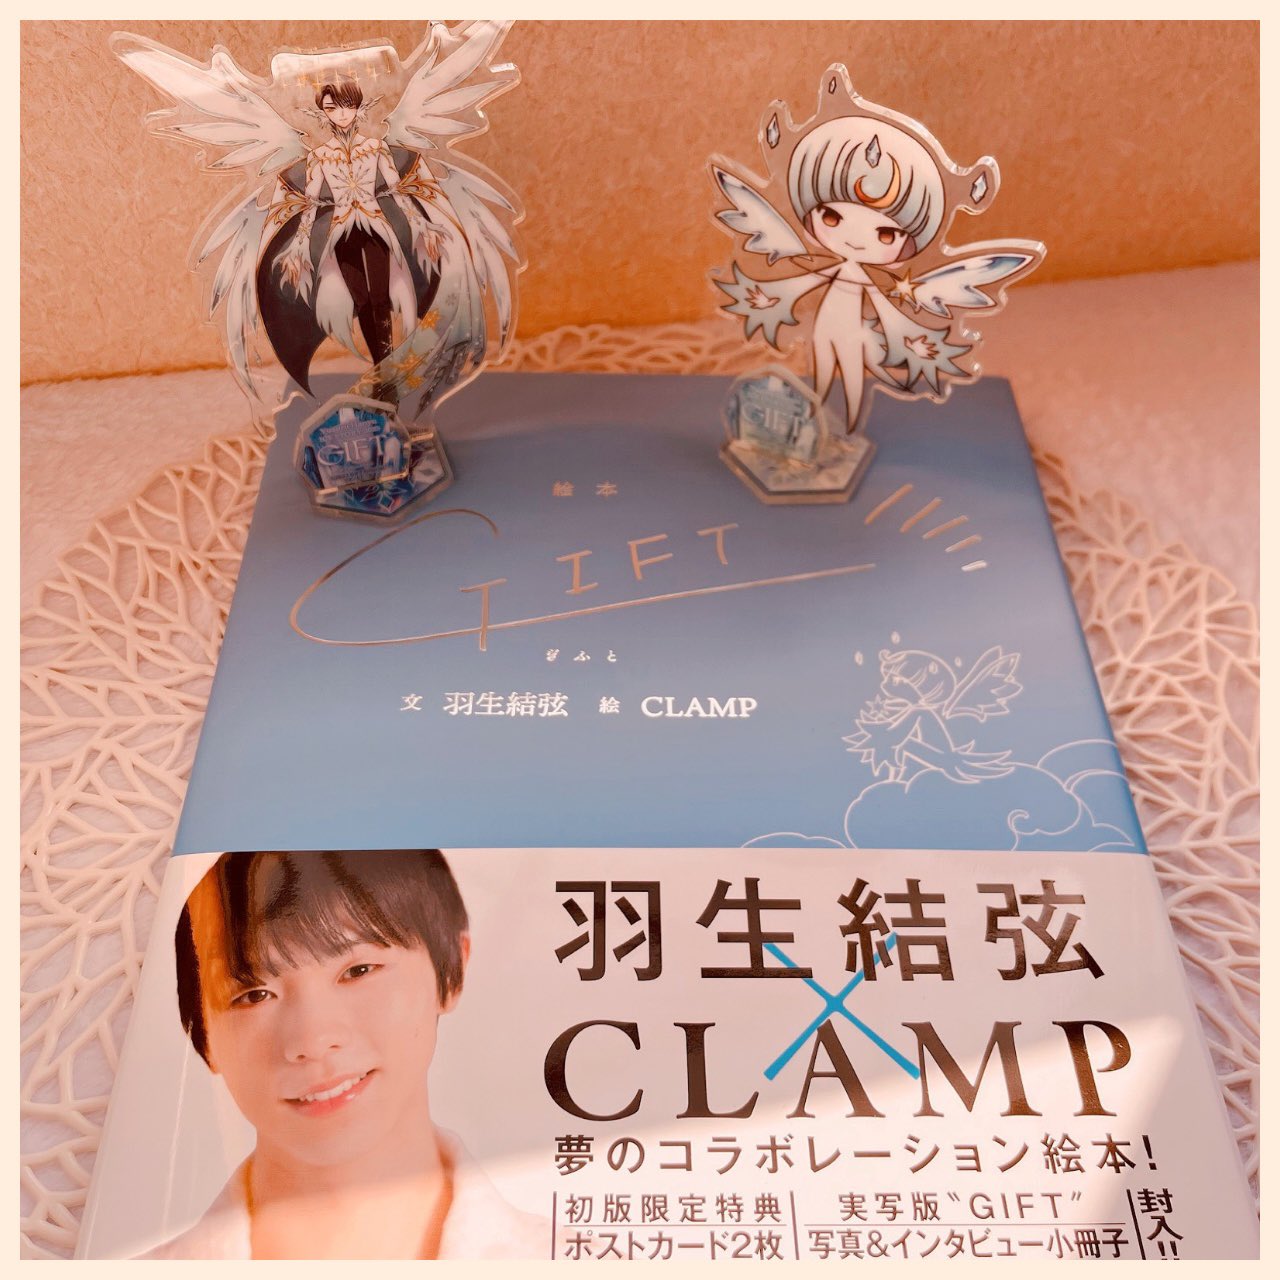 選べるサイズ展開 Amazon.co.jp: 羽生結弦&CLAMP GIFT小冊子